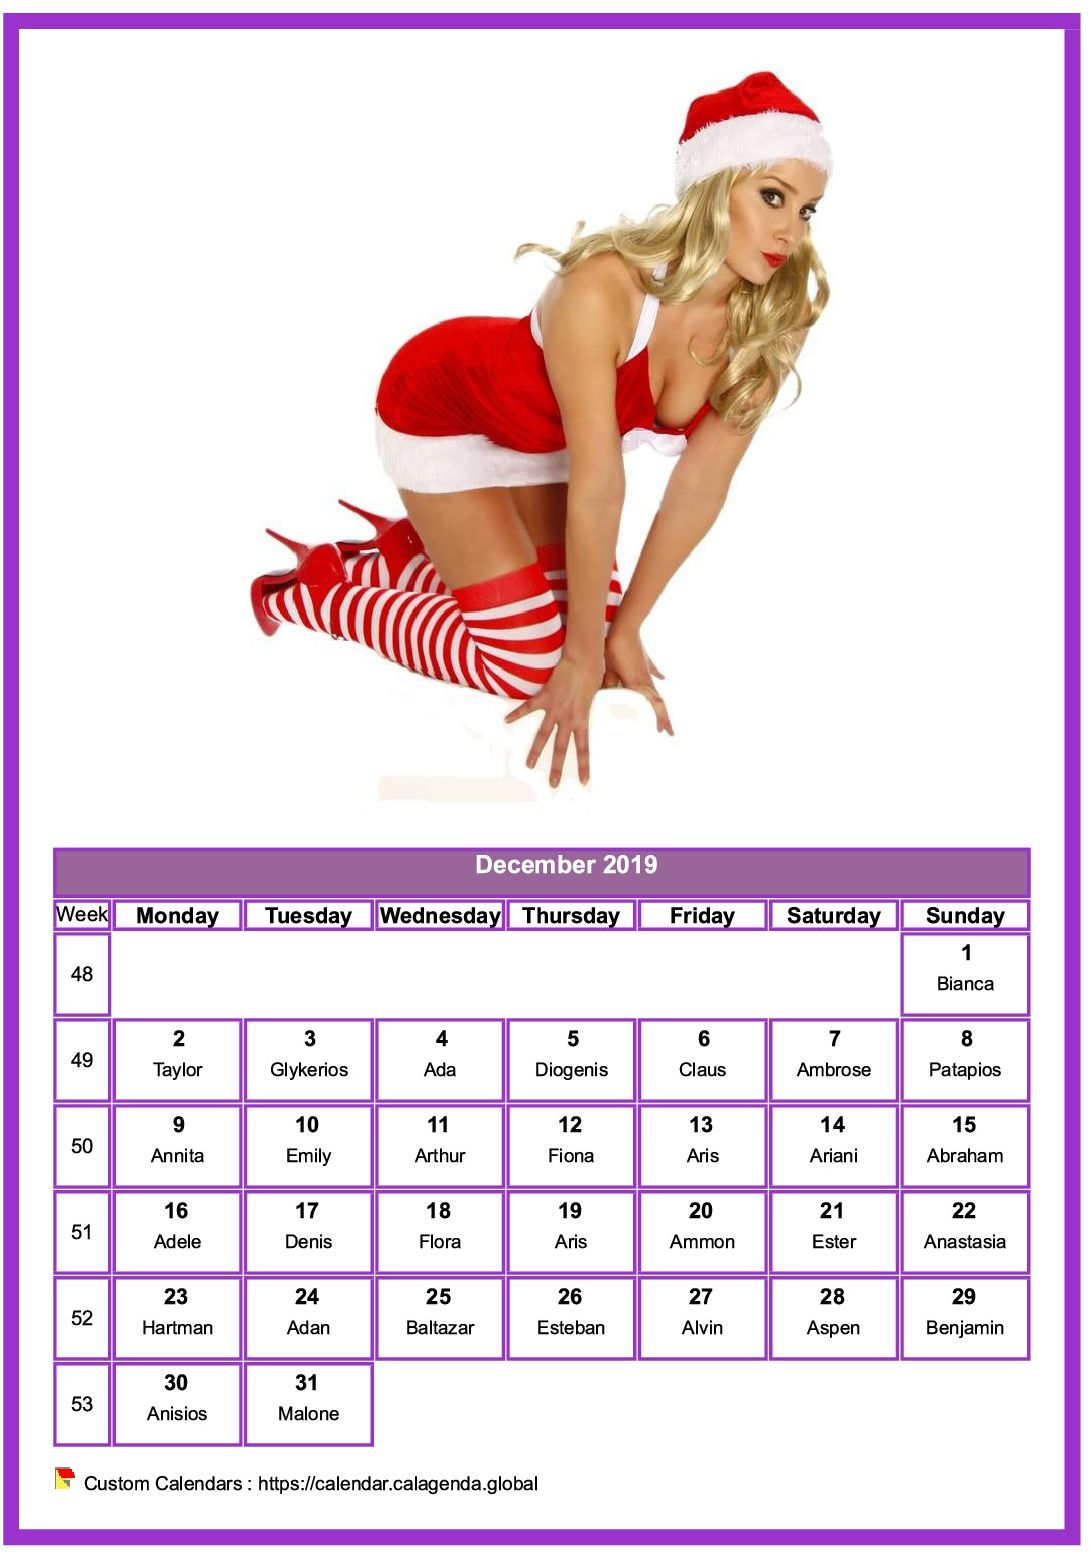 Calendar December 2019 women